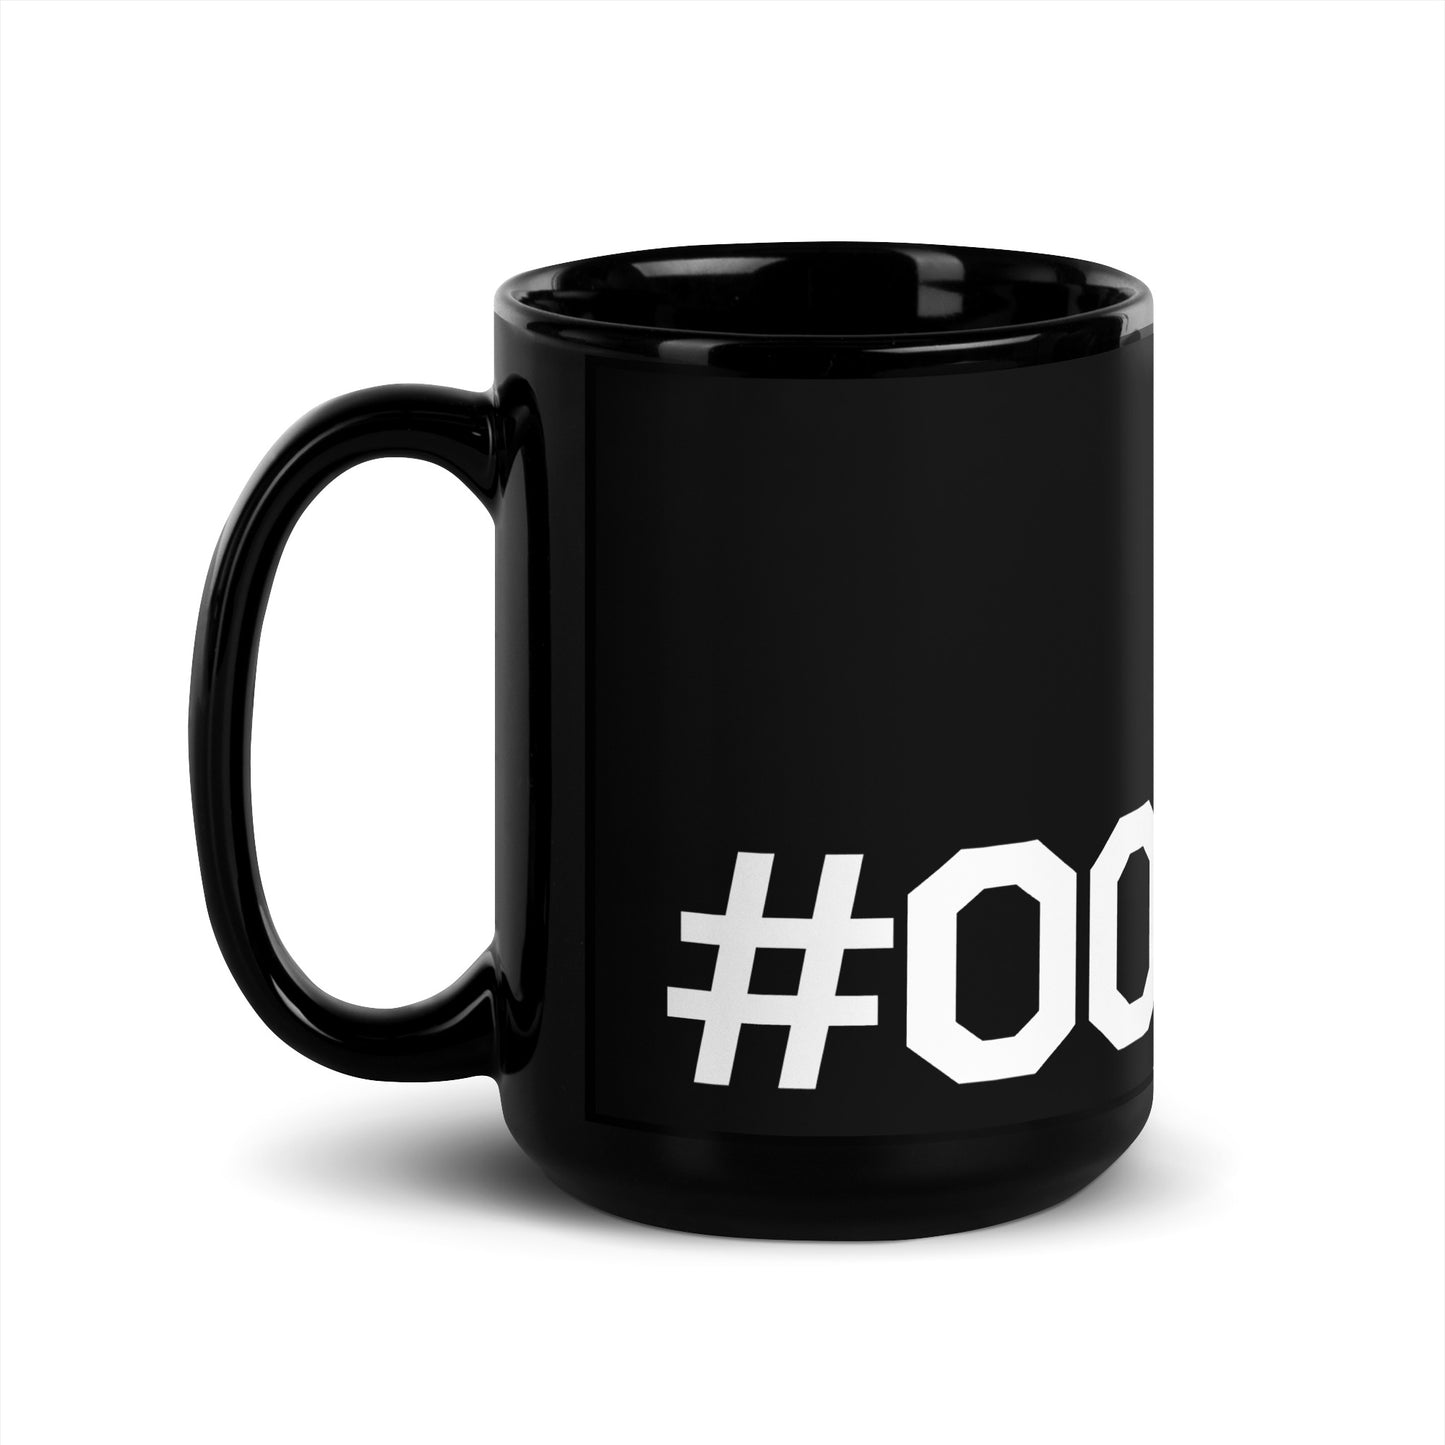 #000000 Black Glossy Mug